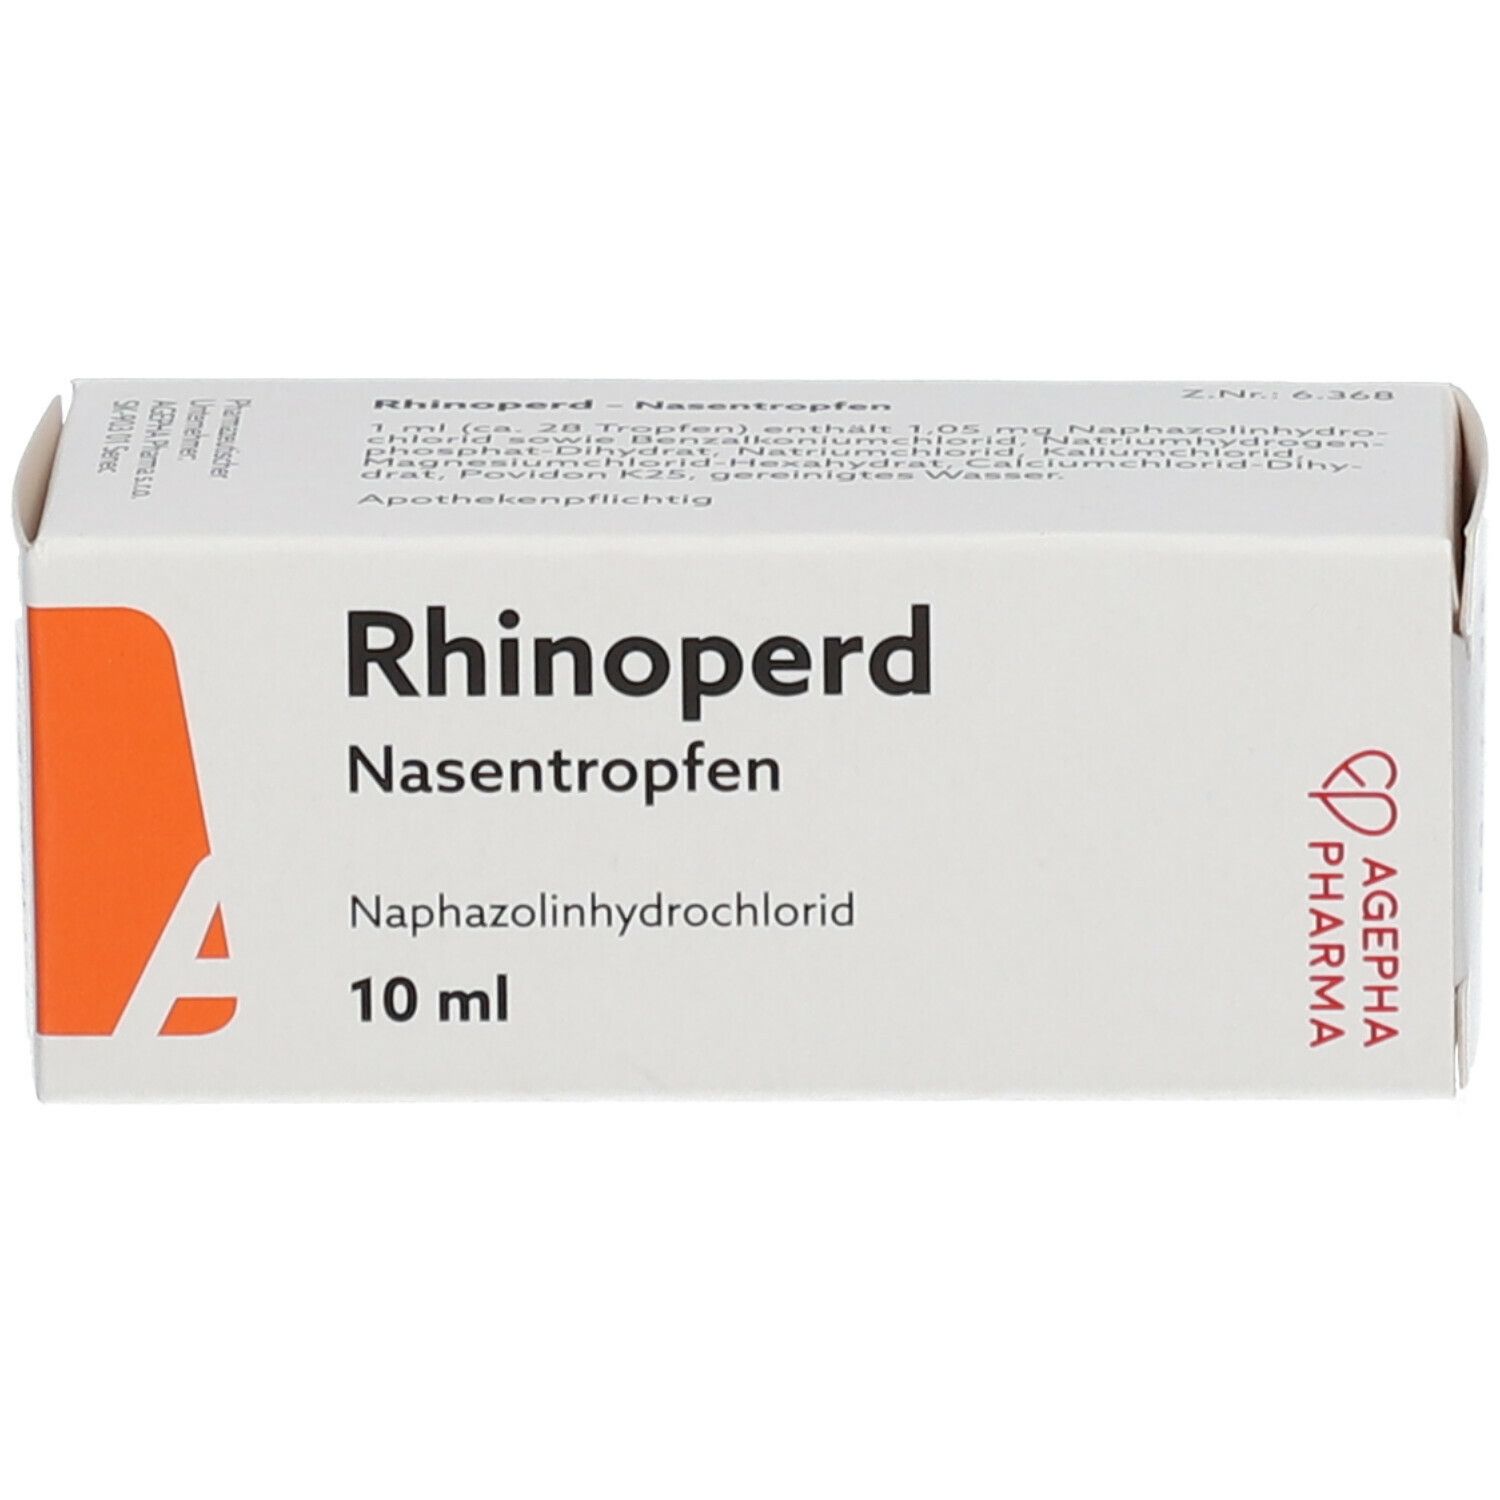 Rhinoperd Nasentropfen